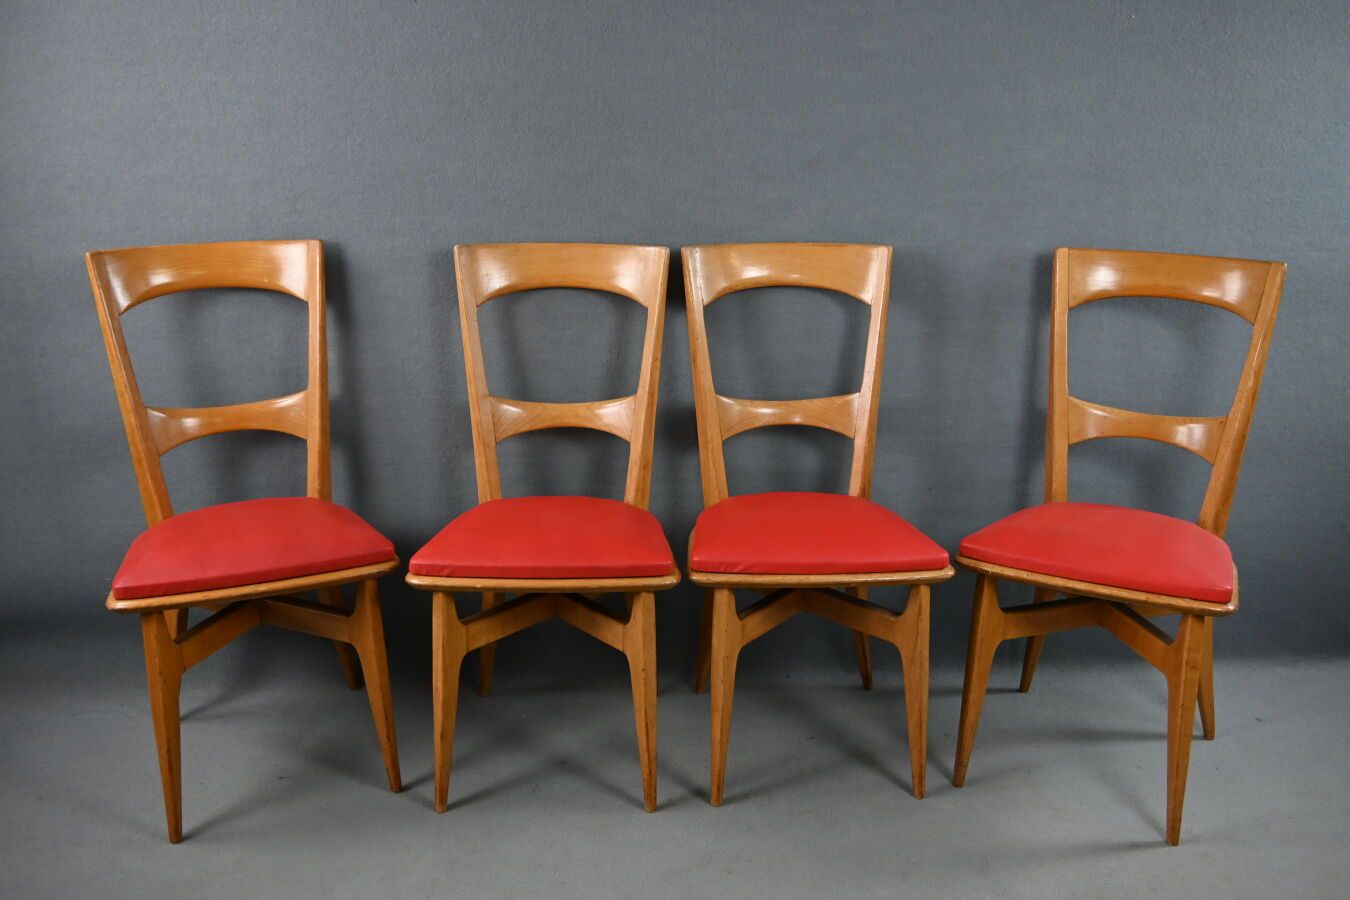 Null 一套 4 张复古椅子，红色座椅。60 年代的作品。尺寸：86 x 43 x 42 厘米。